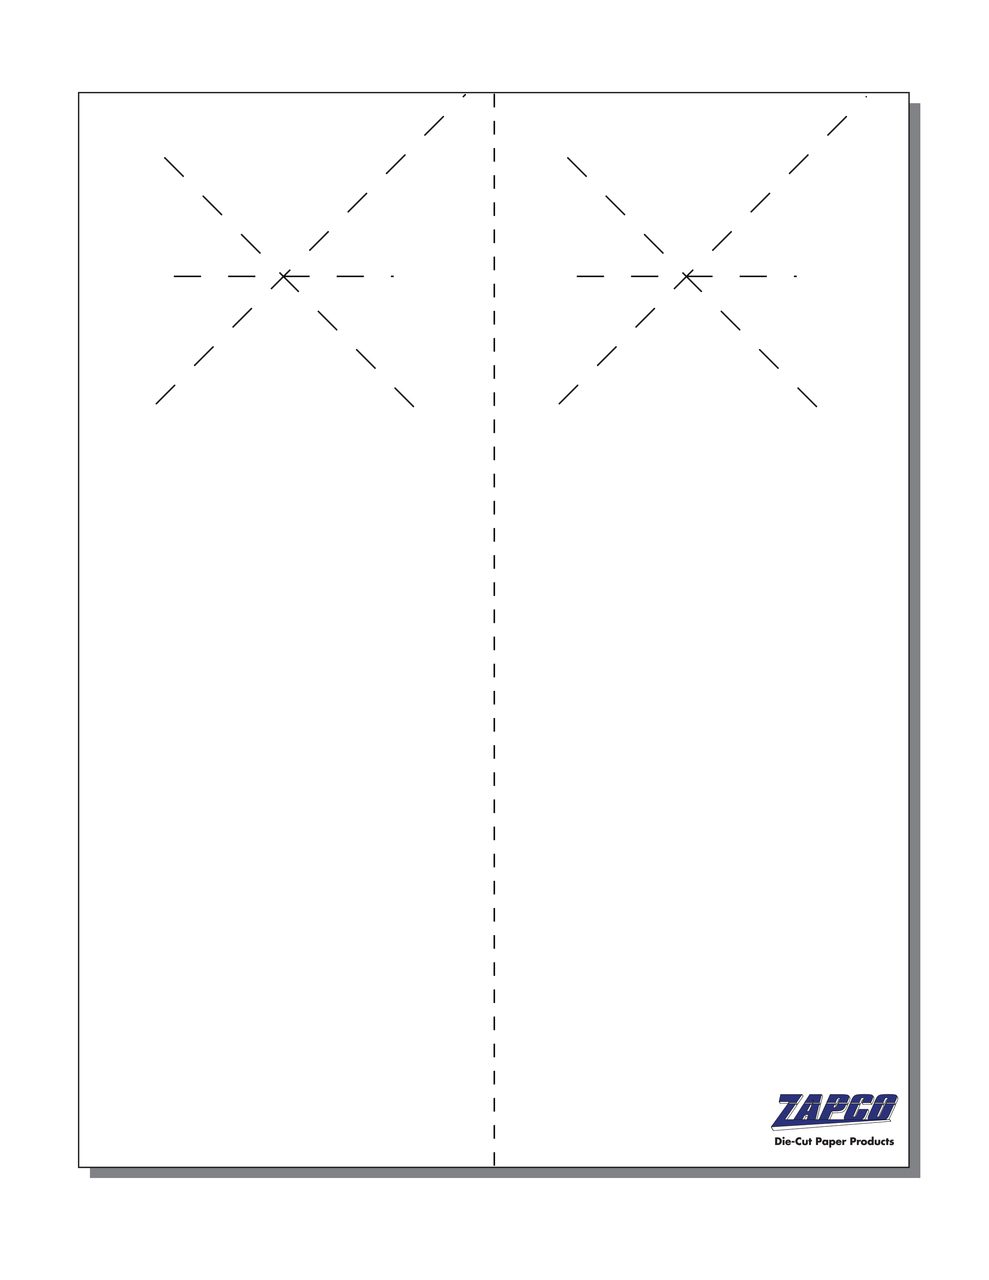 Item 230: 2-Up 4 1/4" x 11" Starburst Door Hanger Paper 8 1/2" x 11" Sheet (250 Sheets)